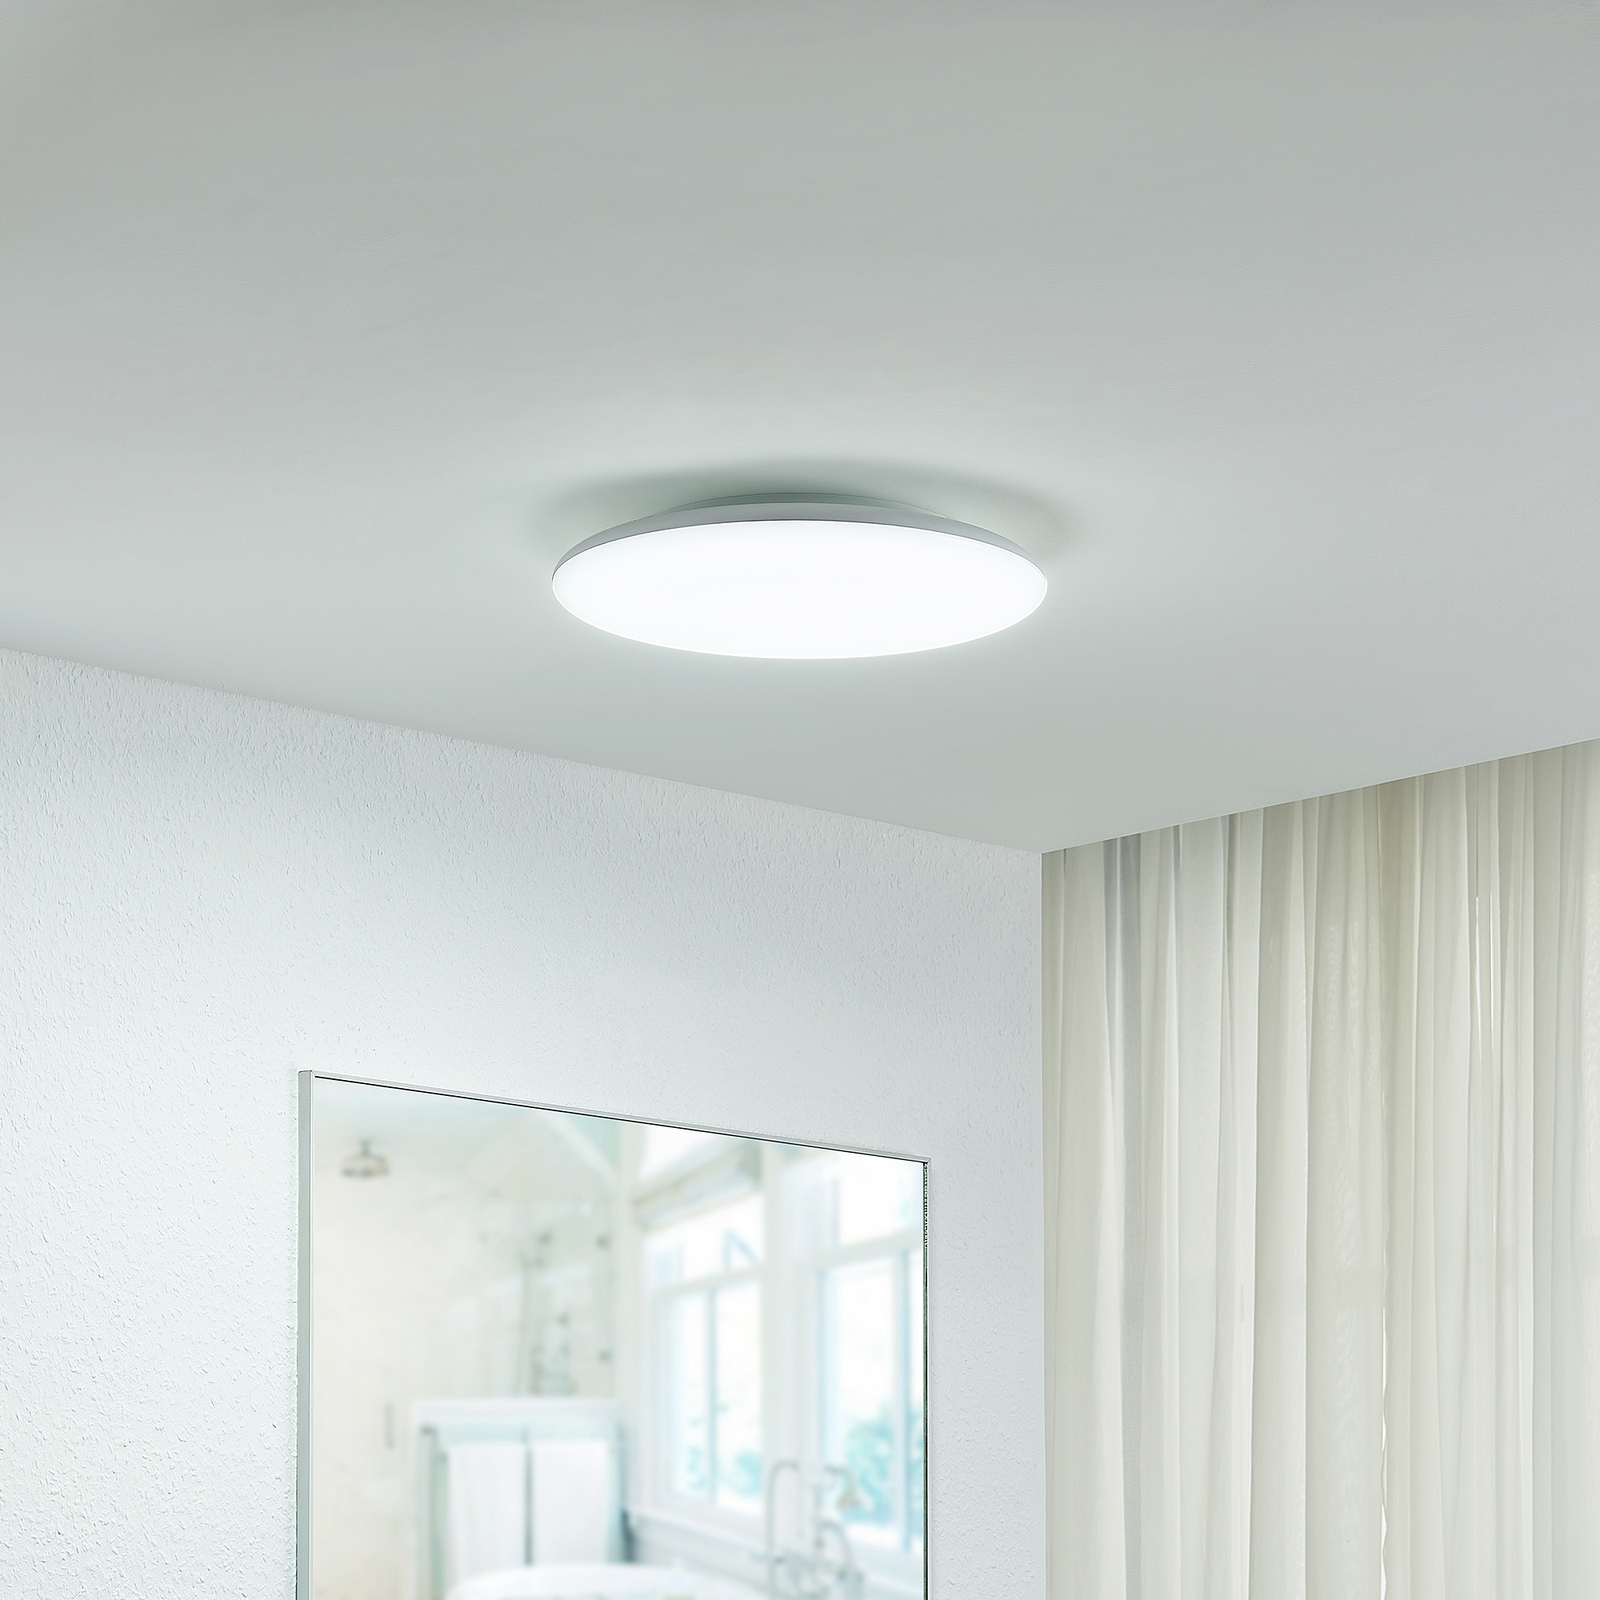 Arcchio Samory LED ceiling light, Ø 30 cm